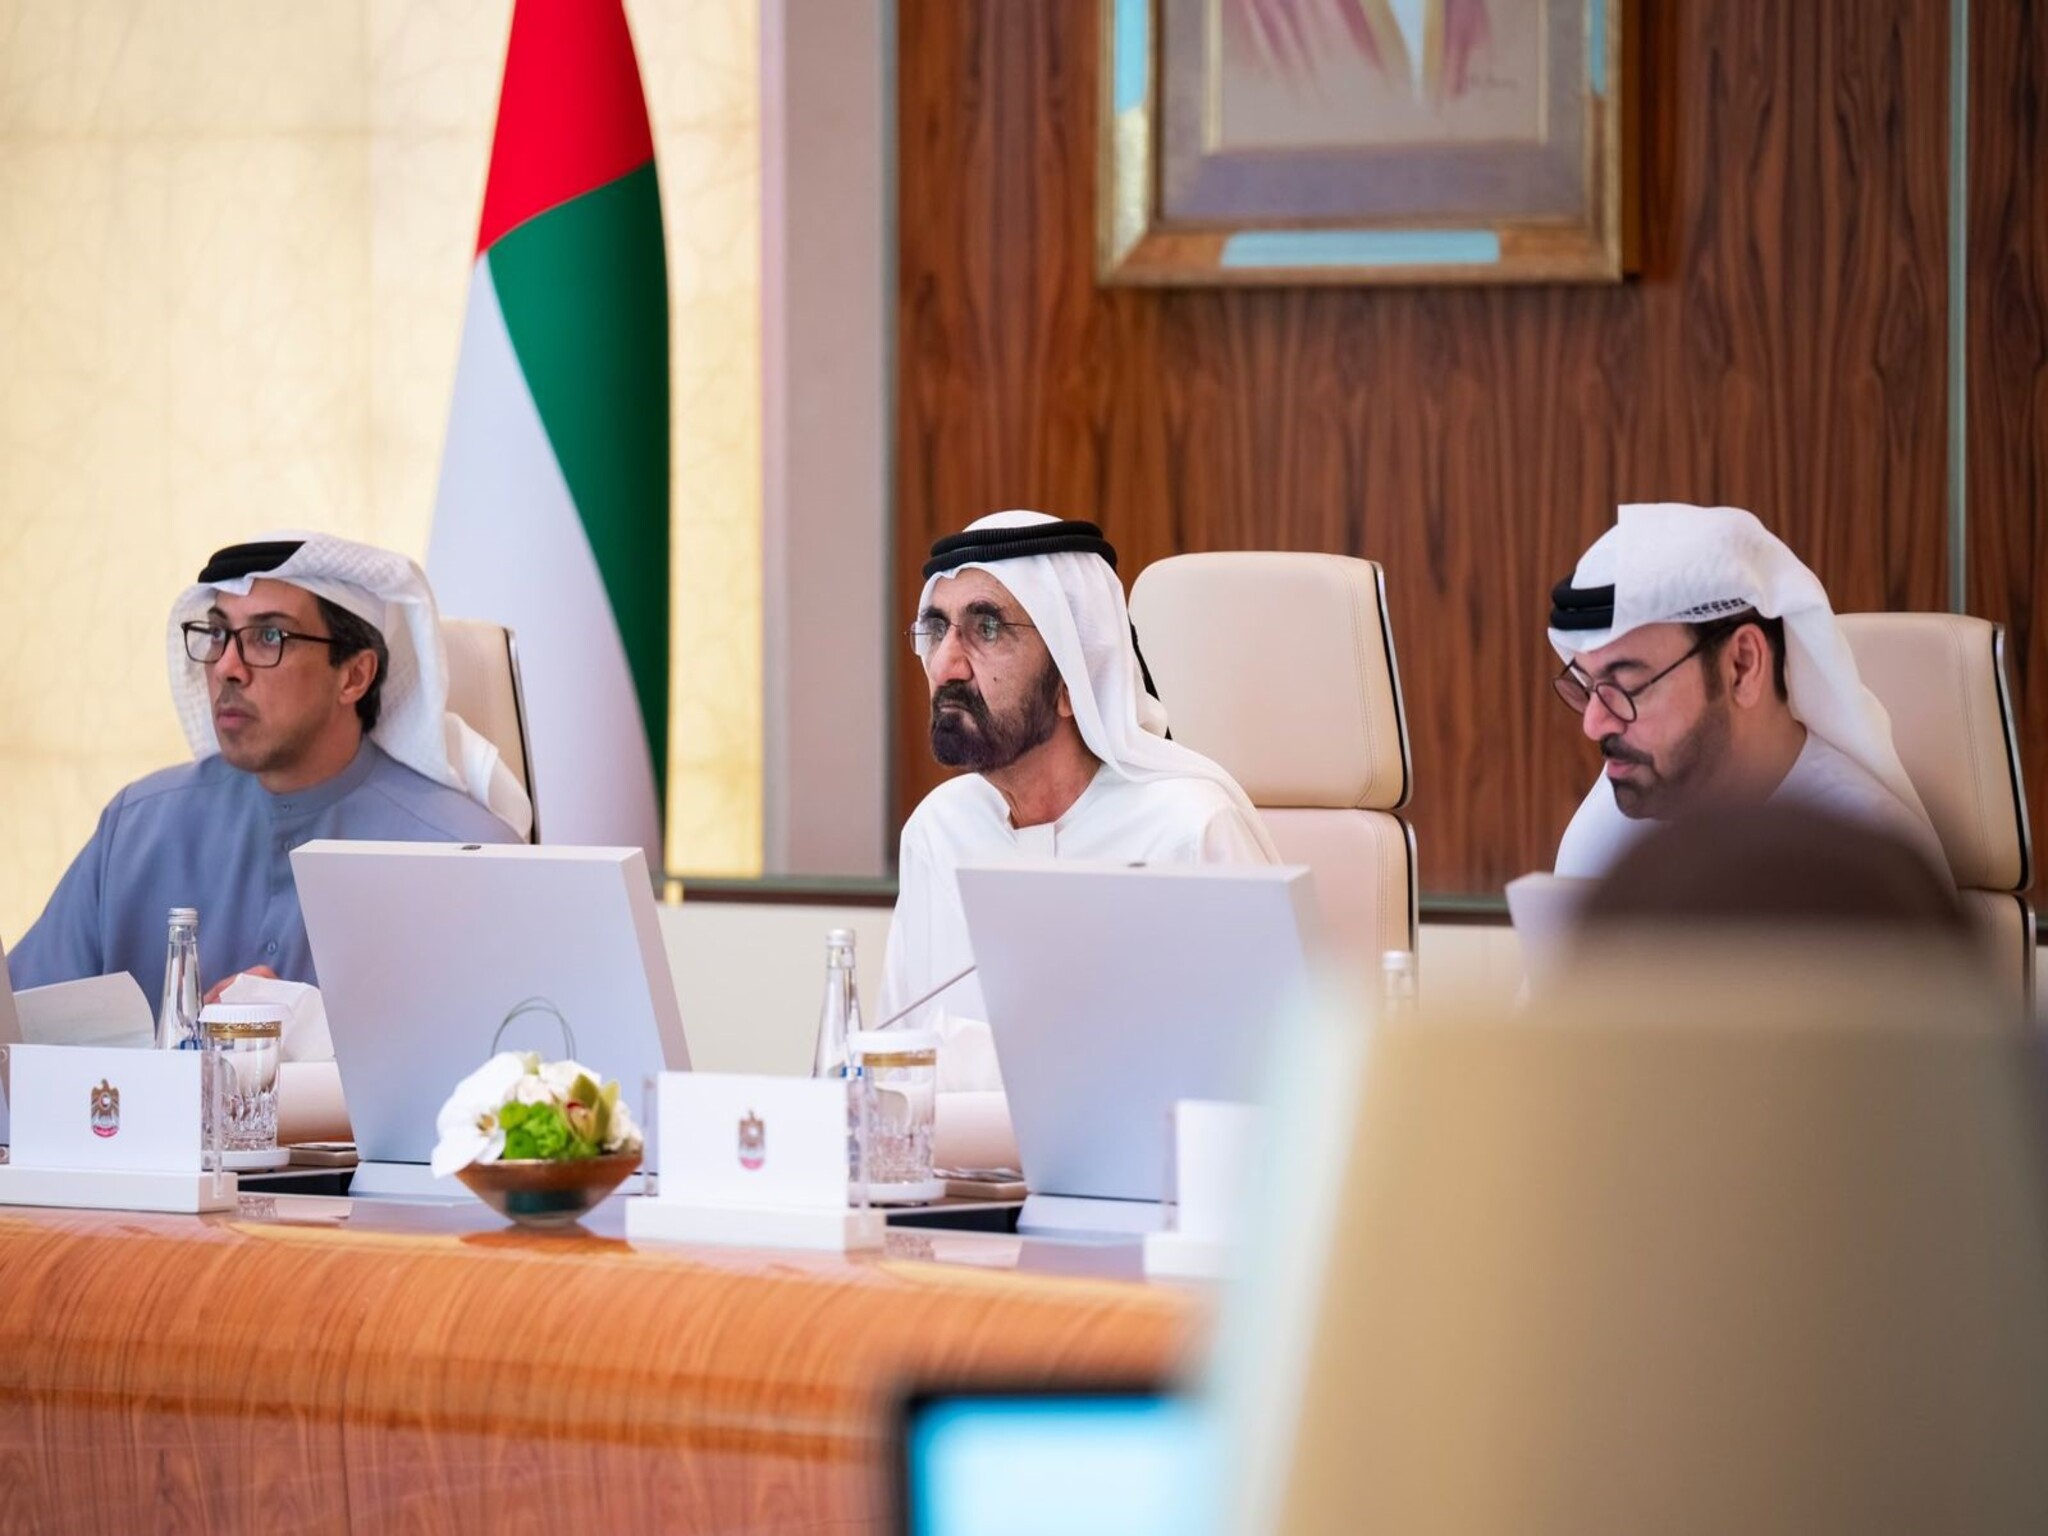  رئيس دولة الإمارات يطلق الاقامة الزرقاء طويلة الأمد (لمدة 10 سنوات)